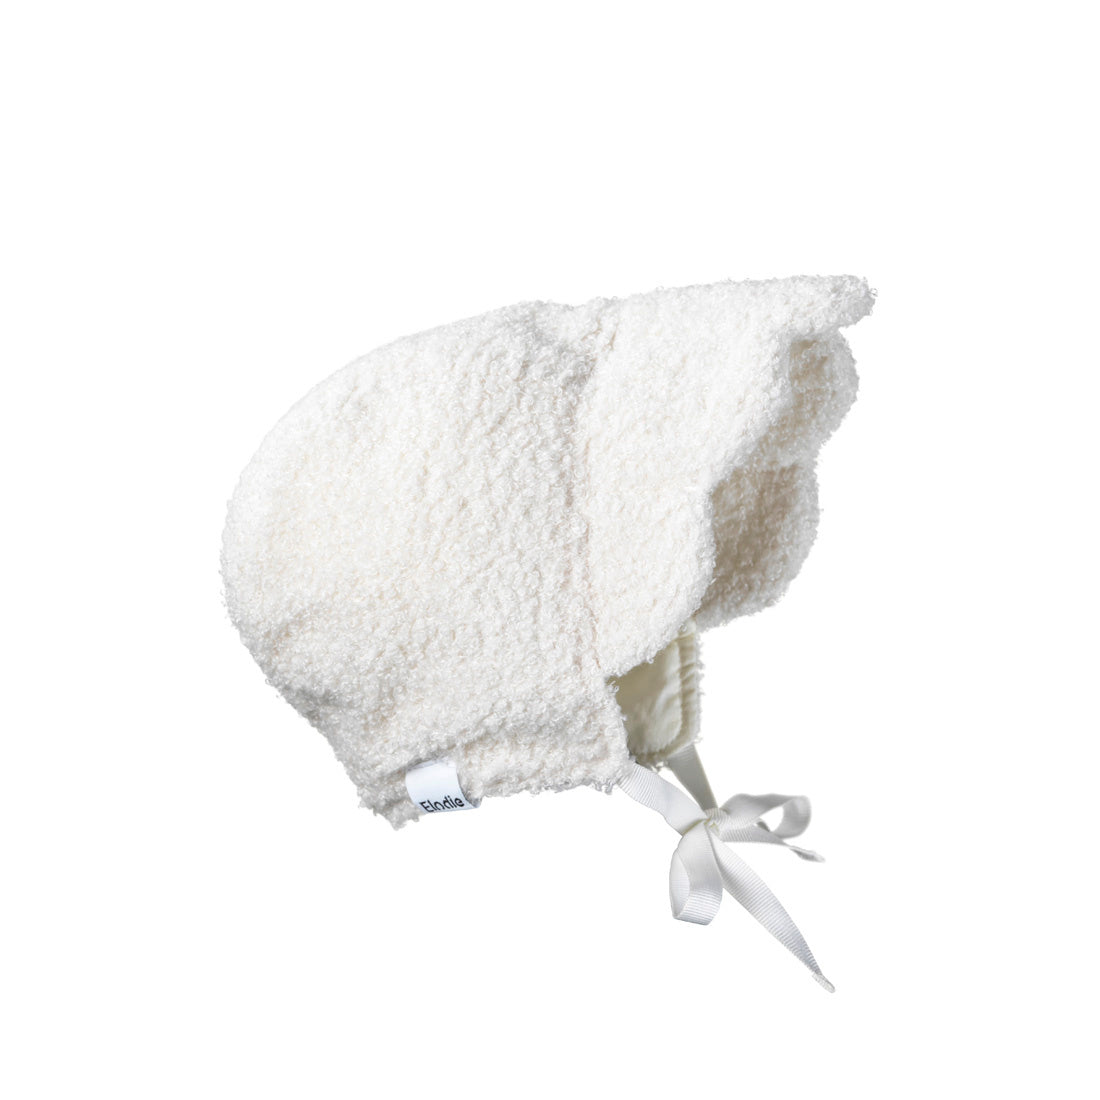 Деталі ELODIE - капелюх Baby Bonnet - Білий букле - 0-3 місяці